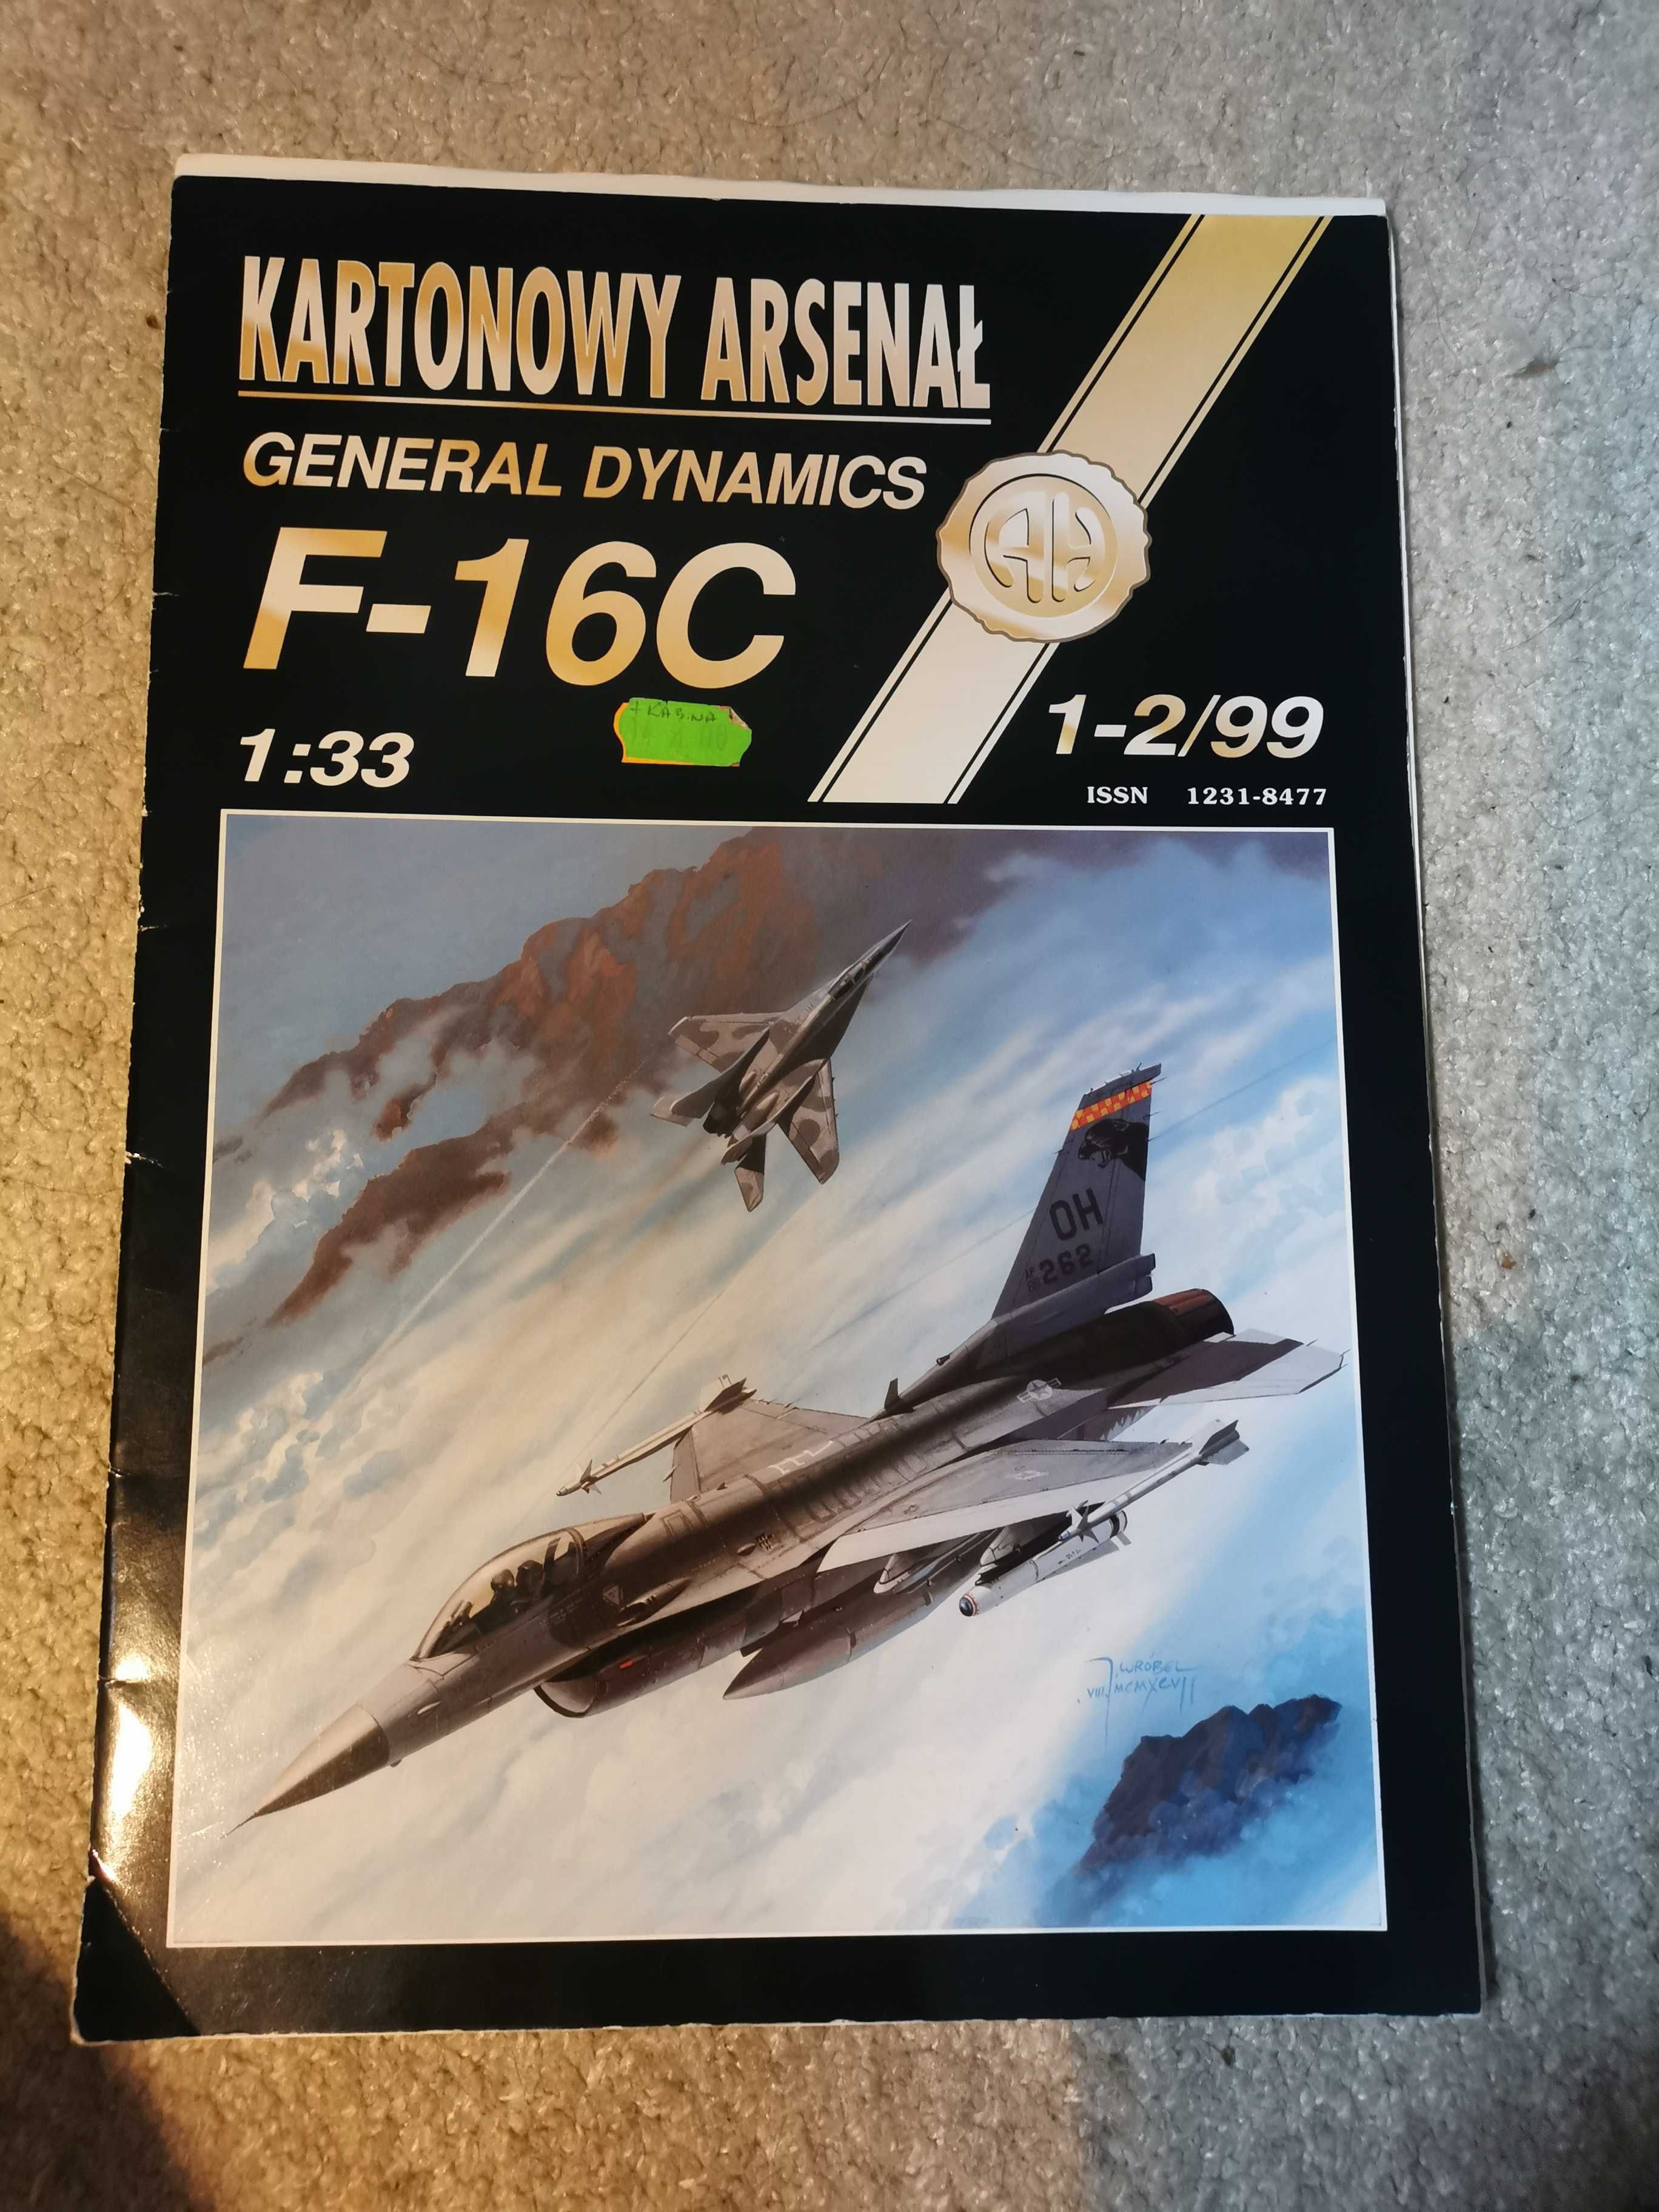 Model kartonowy wyd. Haliński F-16 1999 r oraz inne w opisie